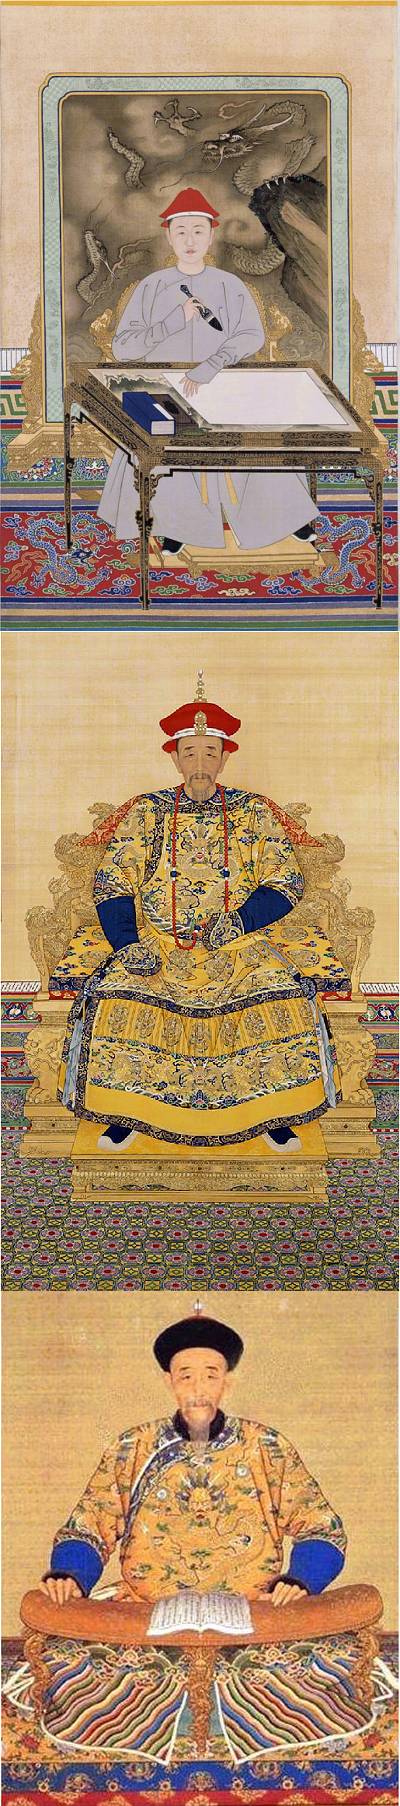 Ba tranh chân dung Hoàng Đế Khang Hy - Thanh